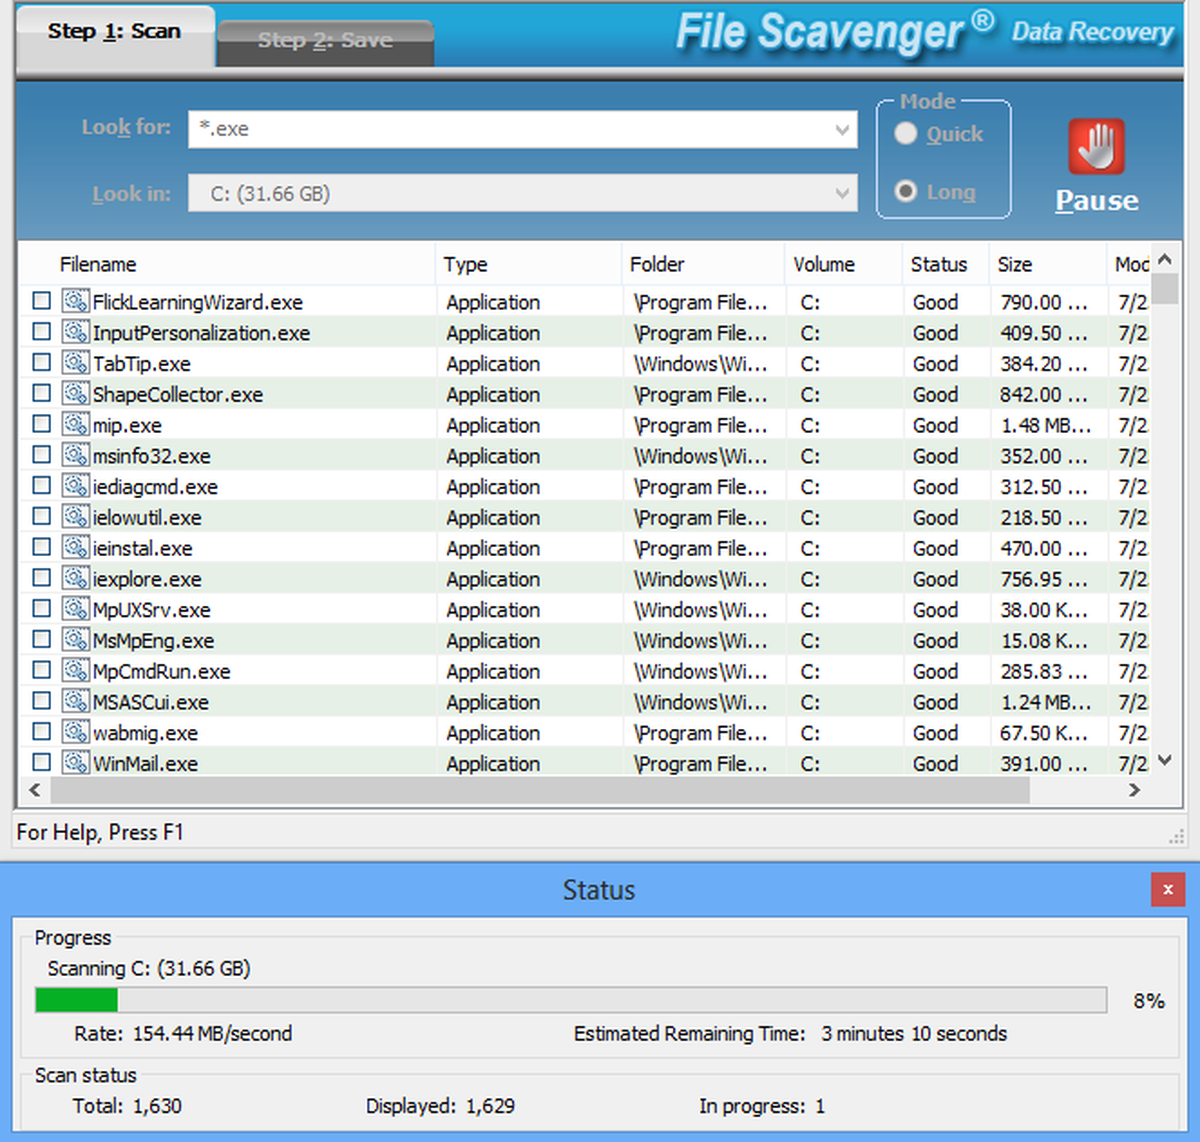 File scavenger 4.1 keygen download free